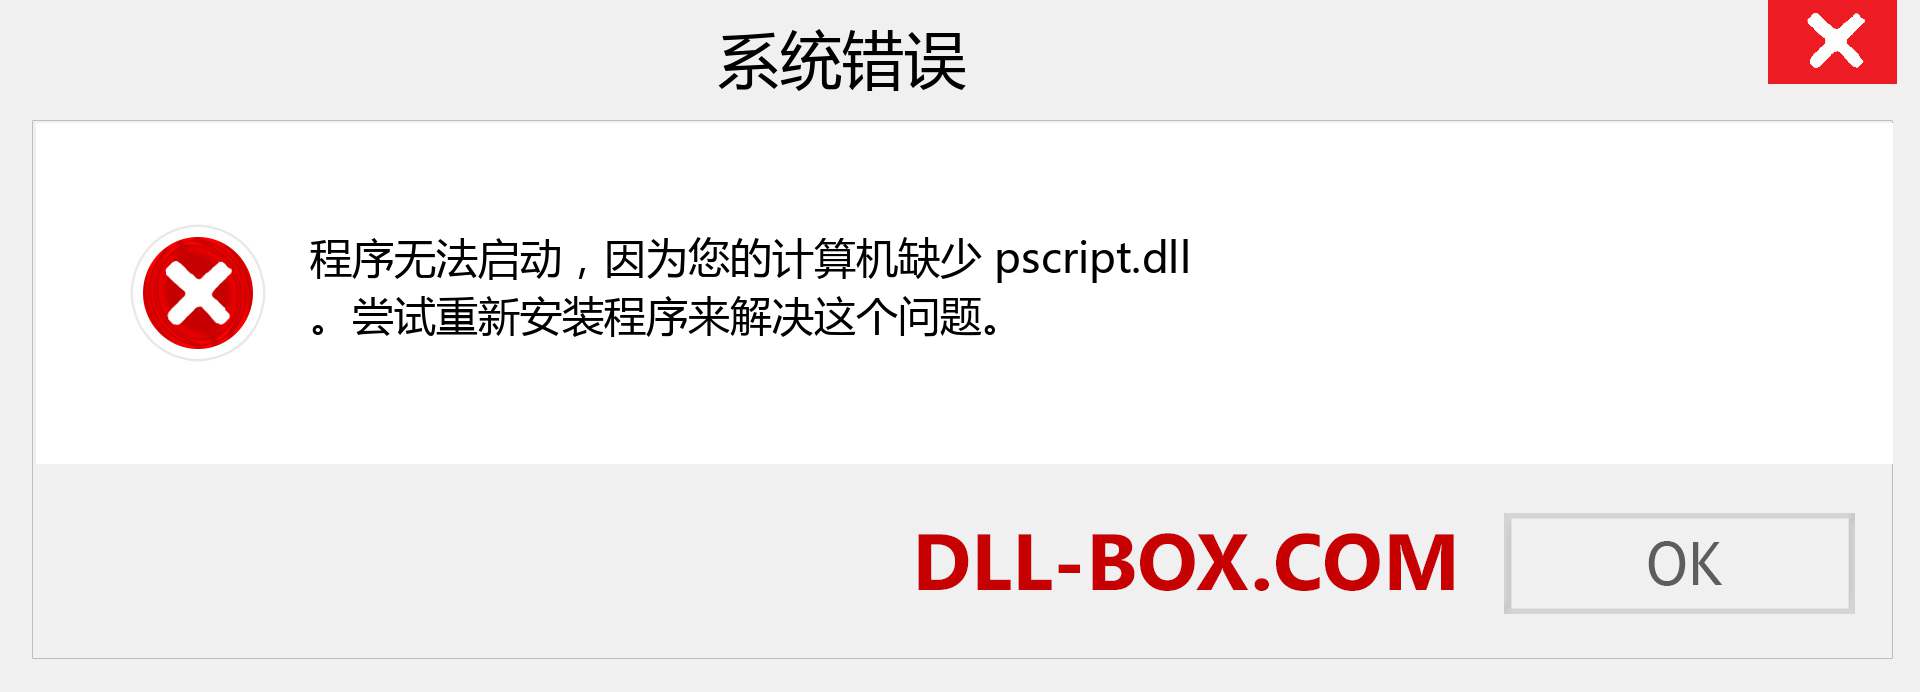 pscript.dll 文件丢失？。 适用于 Windows 7、8、10 的下载 - 修复 Windows、照片、图像上的 pscript dll 丢失错误